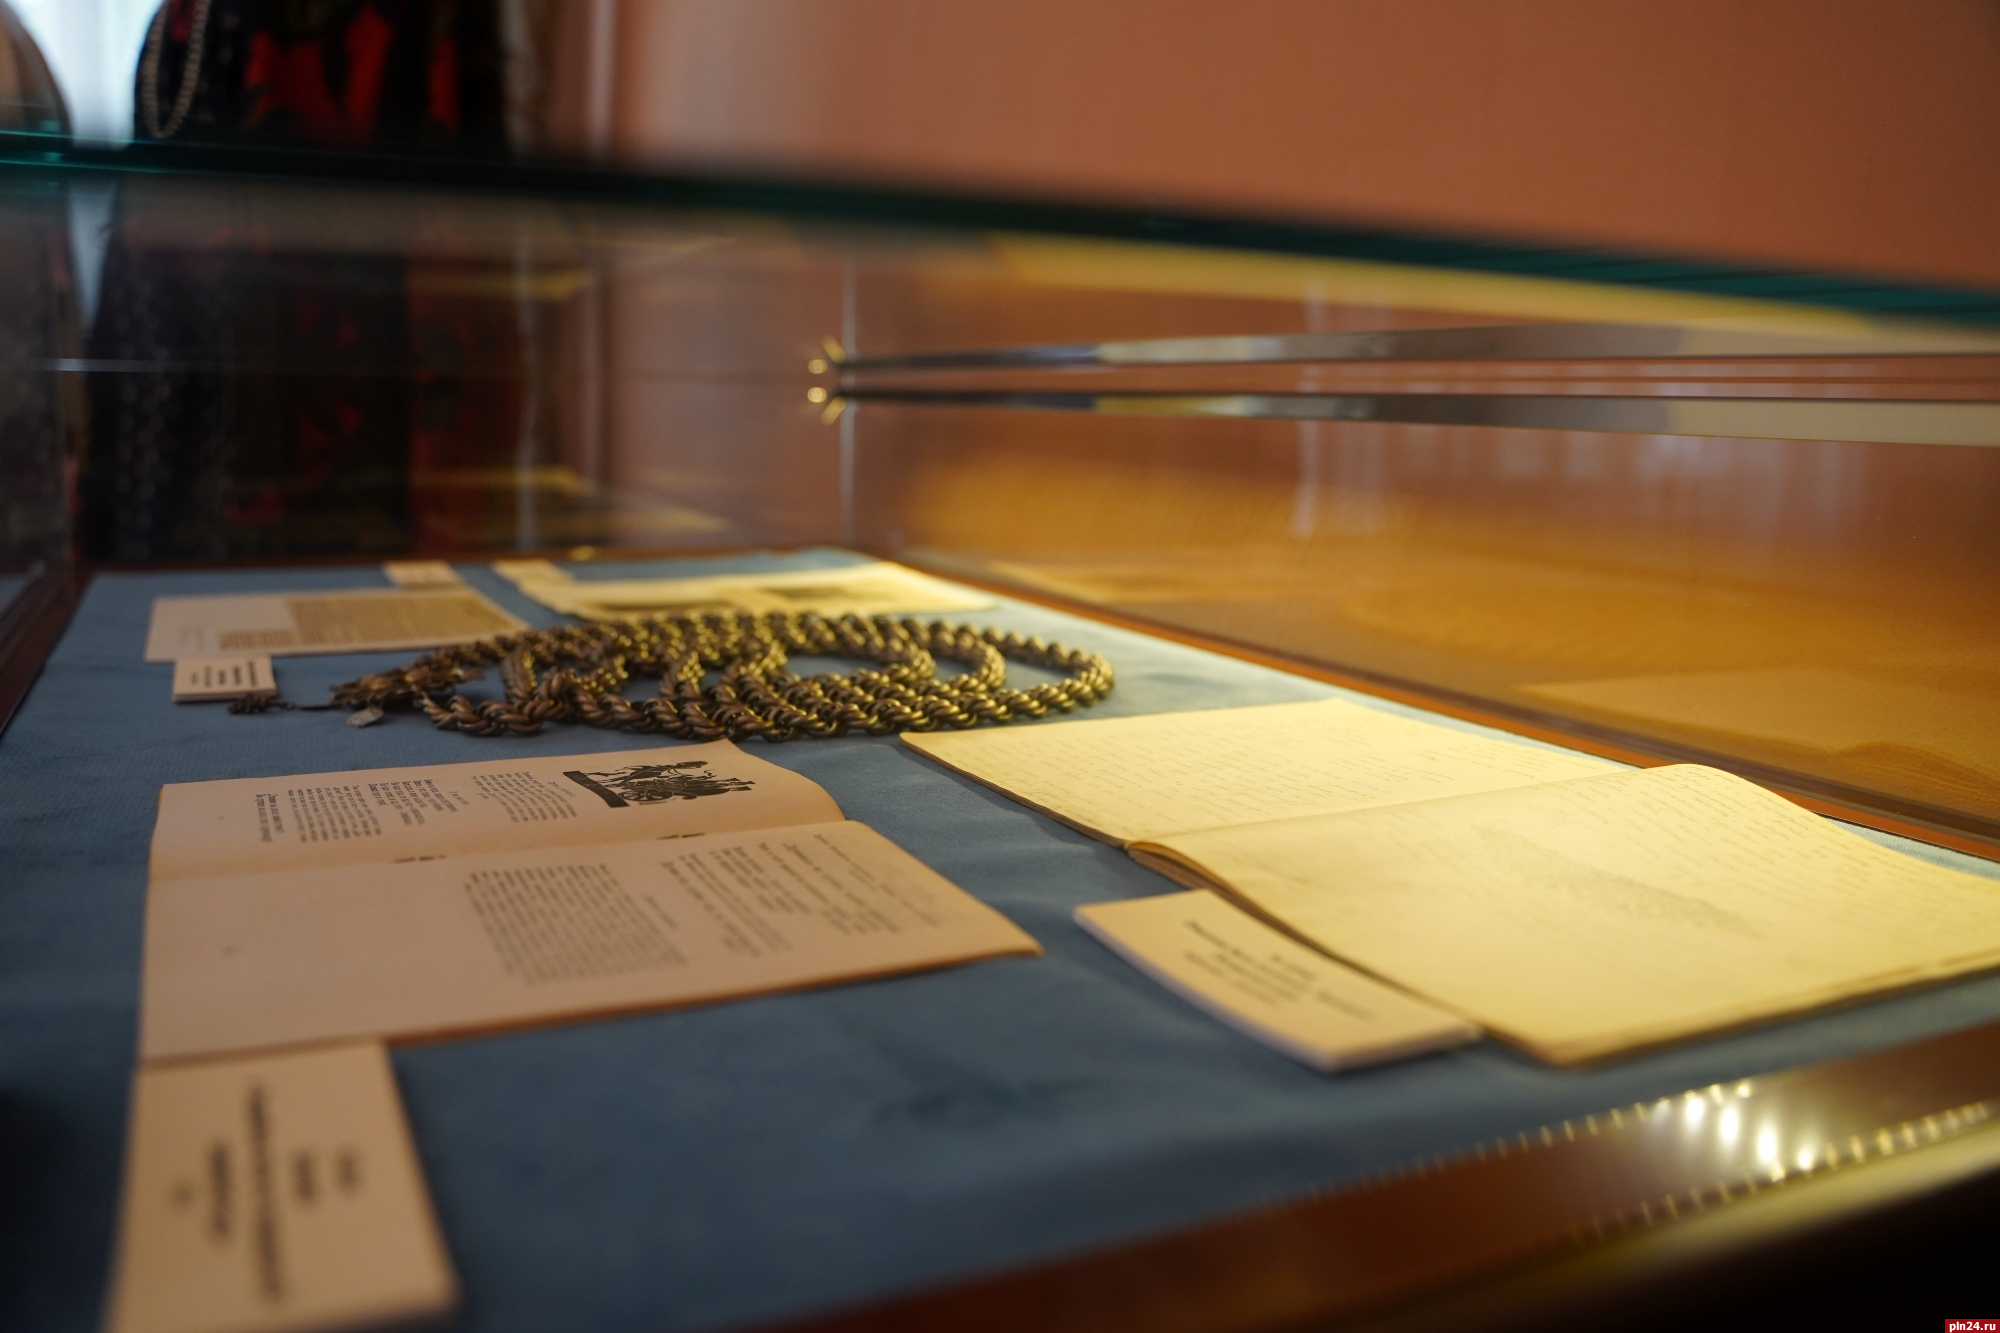 Увидеть древние документы можно на сборных экскурсиях в Печорах